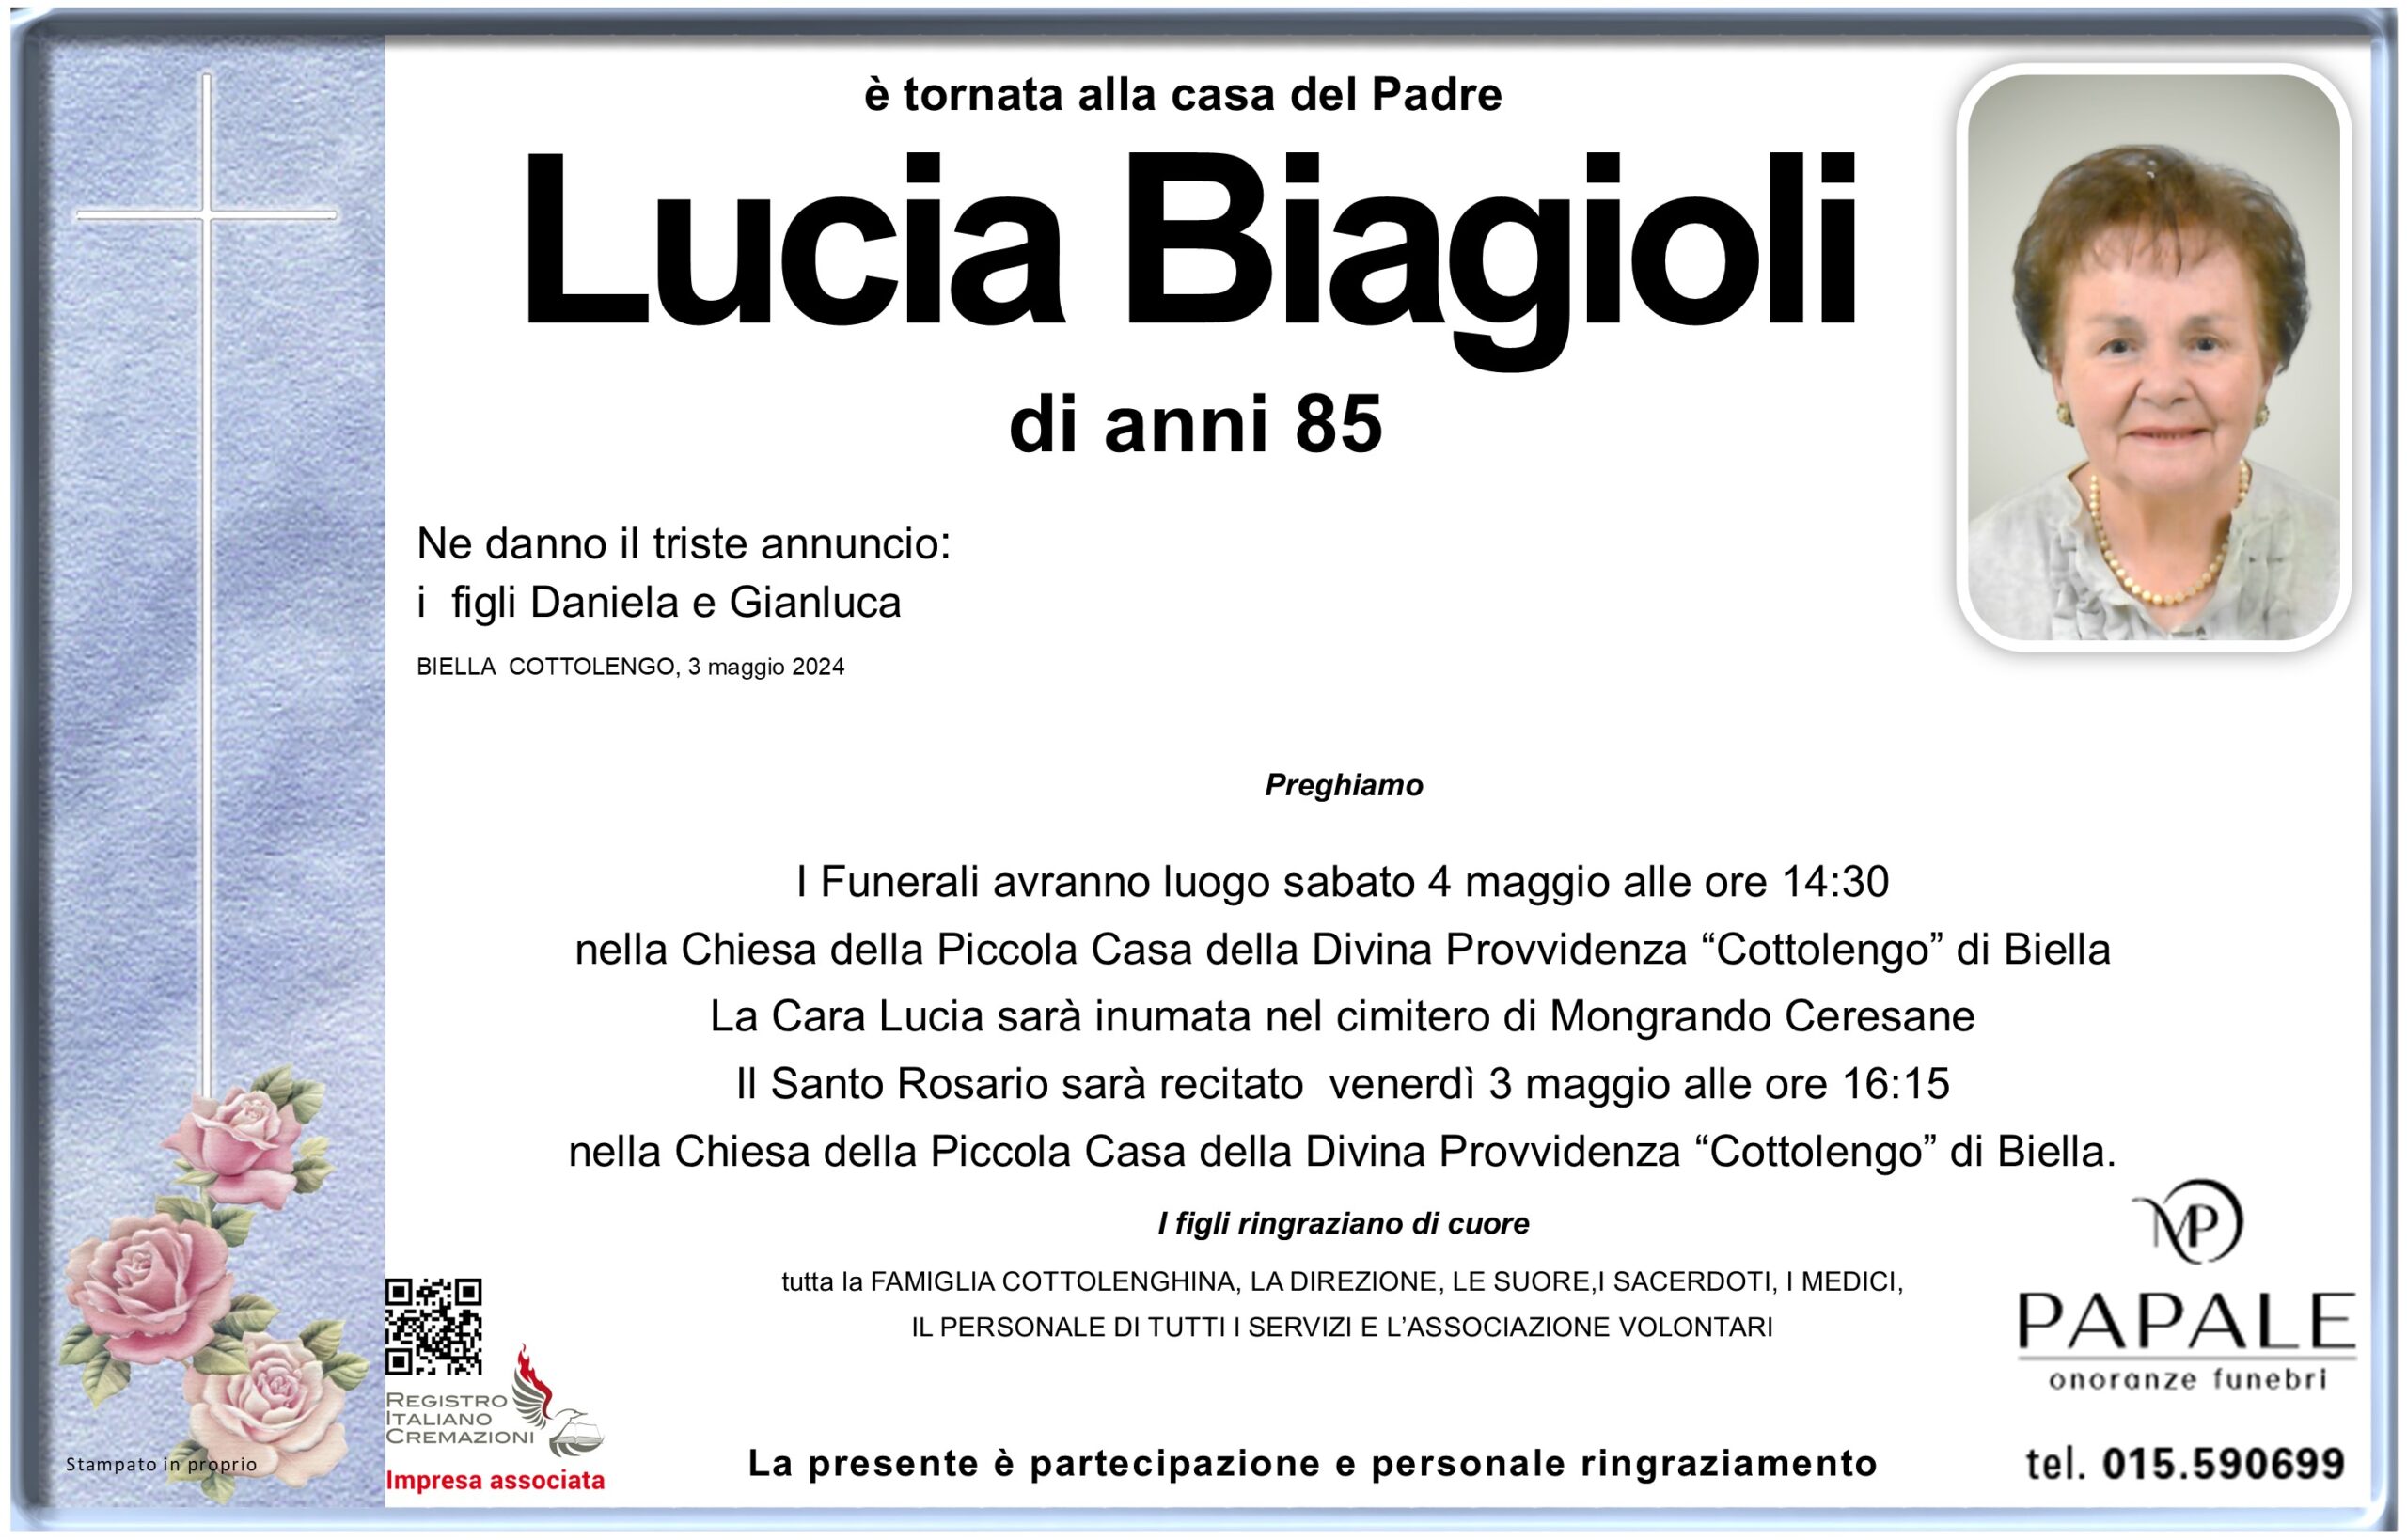 Onoranze Funebri Papale - Necrologi - Necrologio di Lucia Biagioli